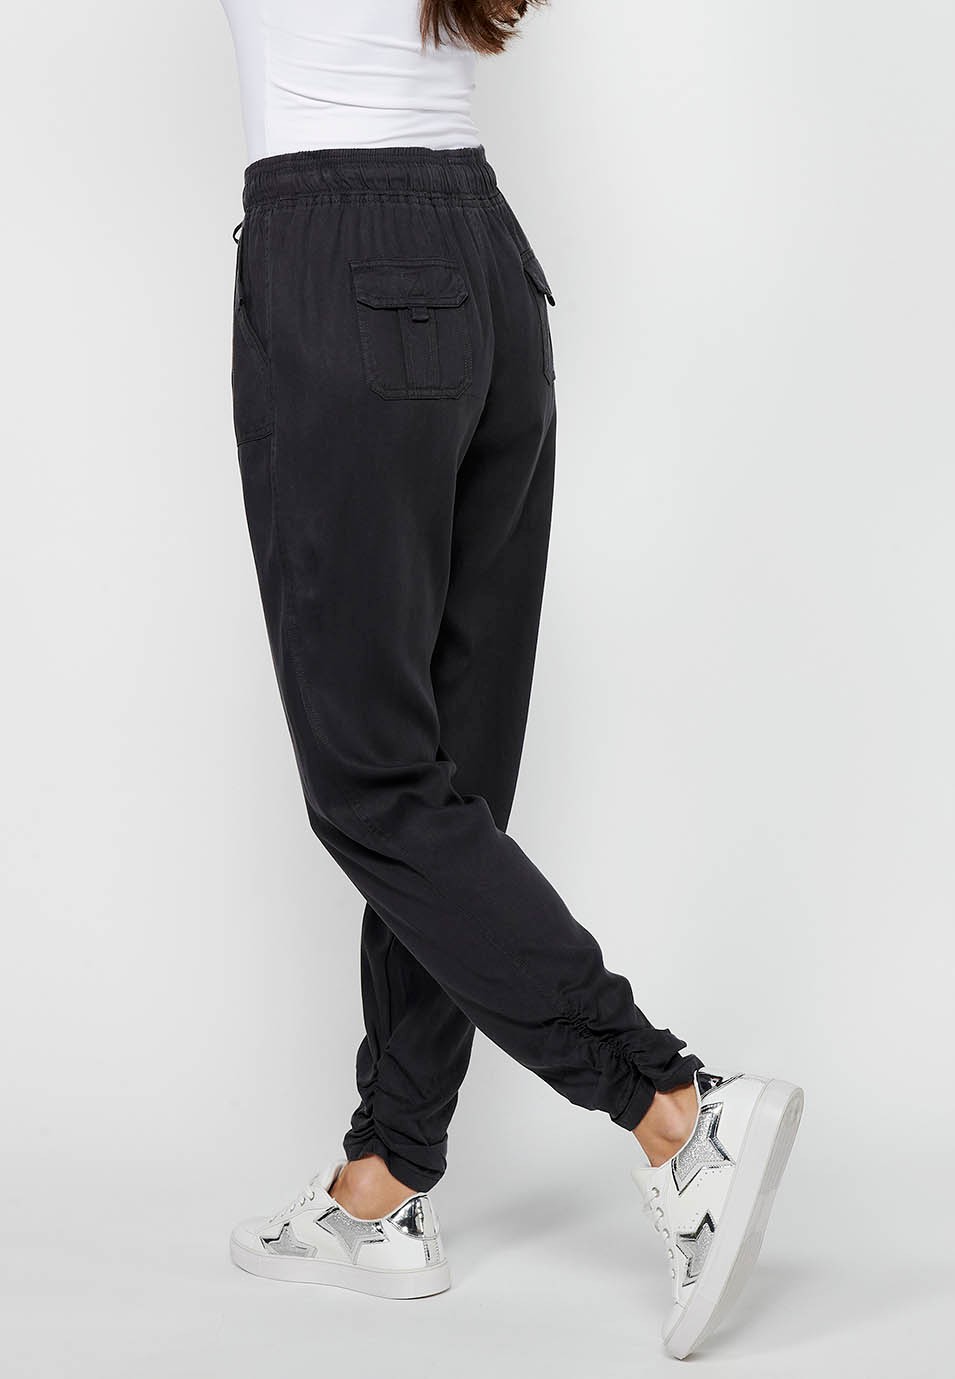 Pantalon de jogging long finition bouclée et taille caoutchoutée avec quatre poches dont deux à l'arrière avec rabat en Noir pour Femme 8